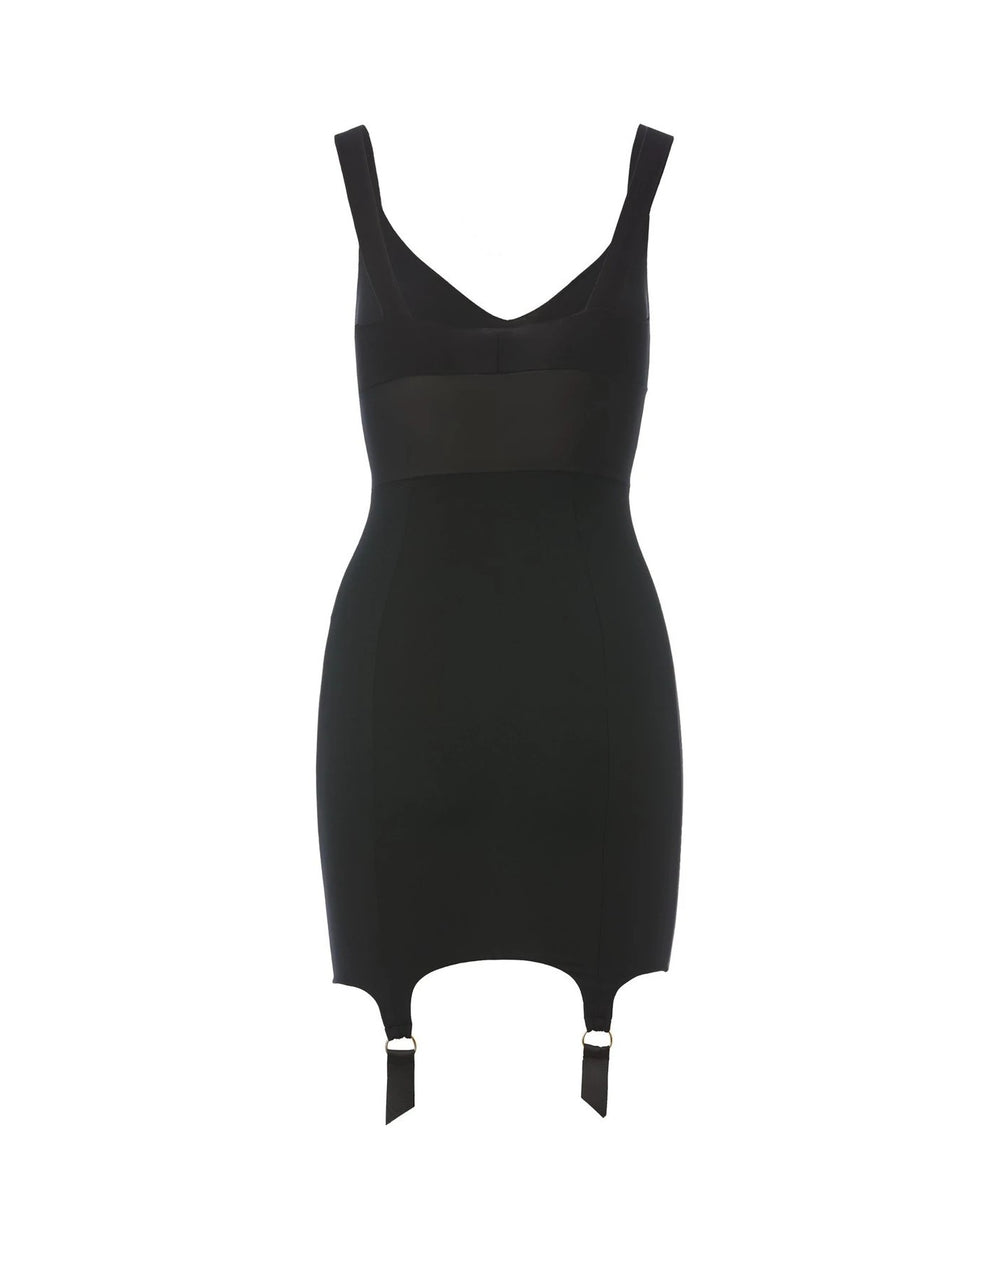 Murmur Grid Underdress Black Mini Dress